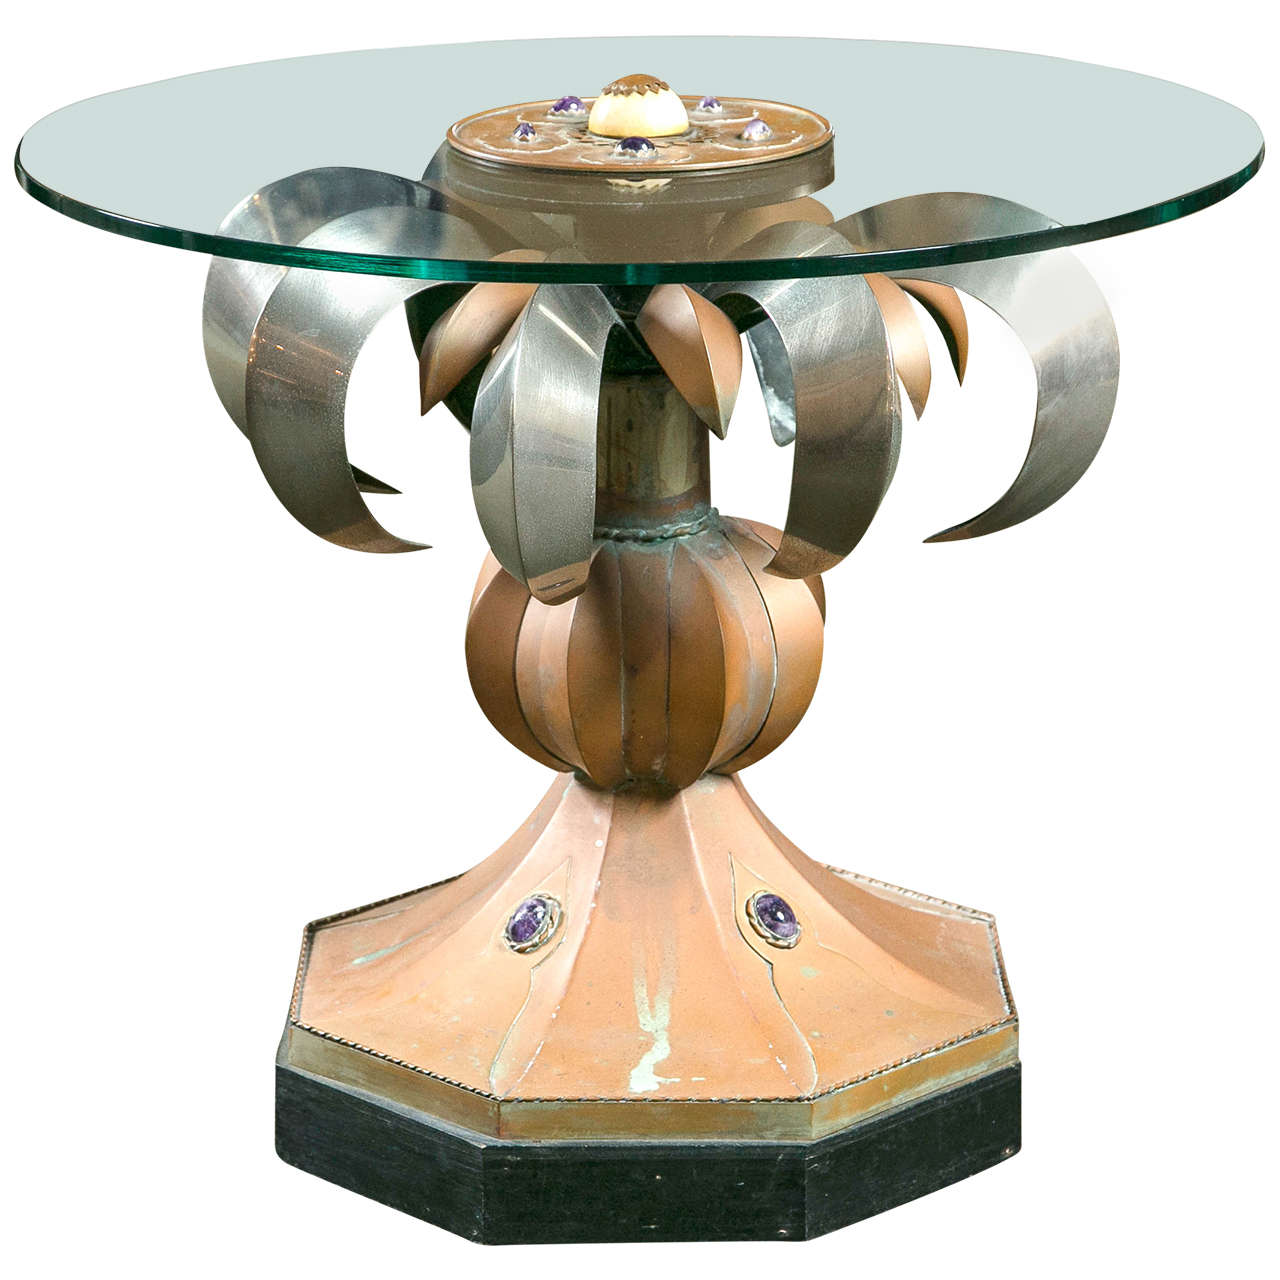 Anthony Redmile, Tisch aus gemischten Metallen